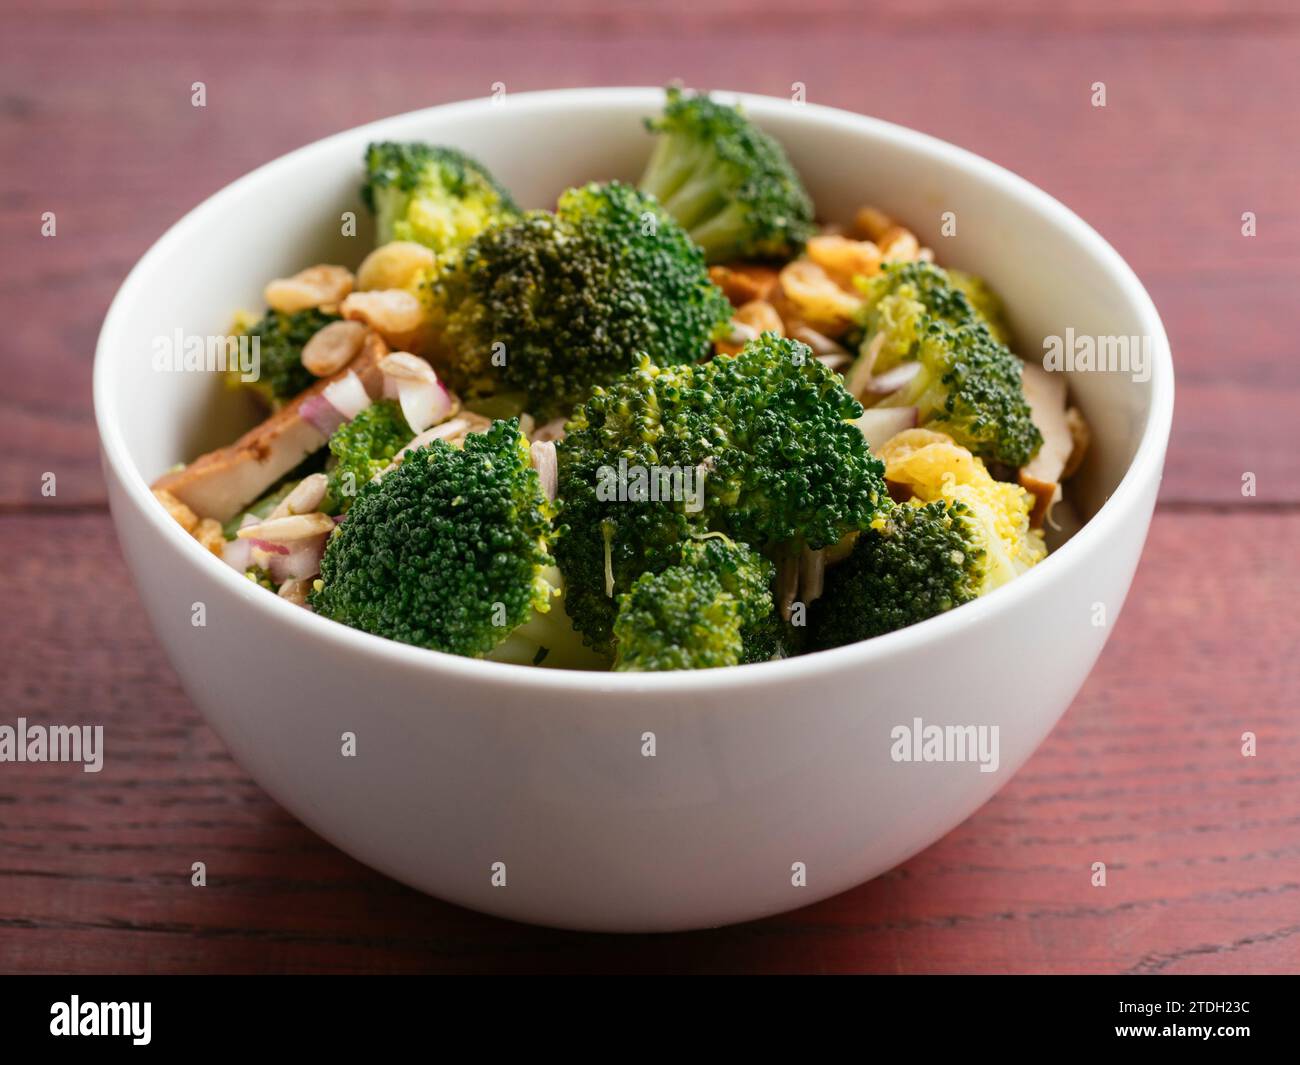 Salade végétalienne de brocoli avec brocoli, oignon rouge, raisins secs dorés, tofu fumé et graines de tournesol Banque D'Images